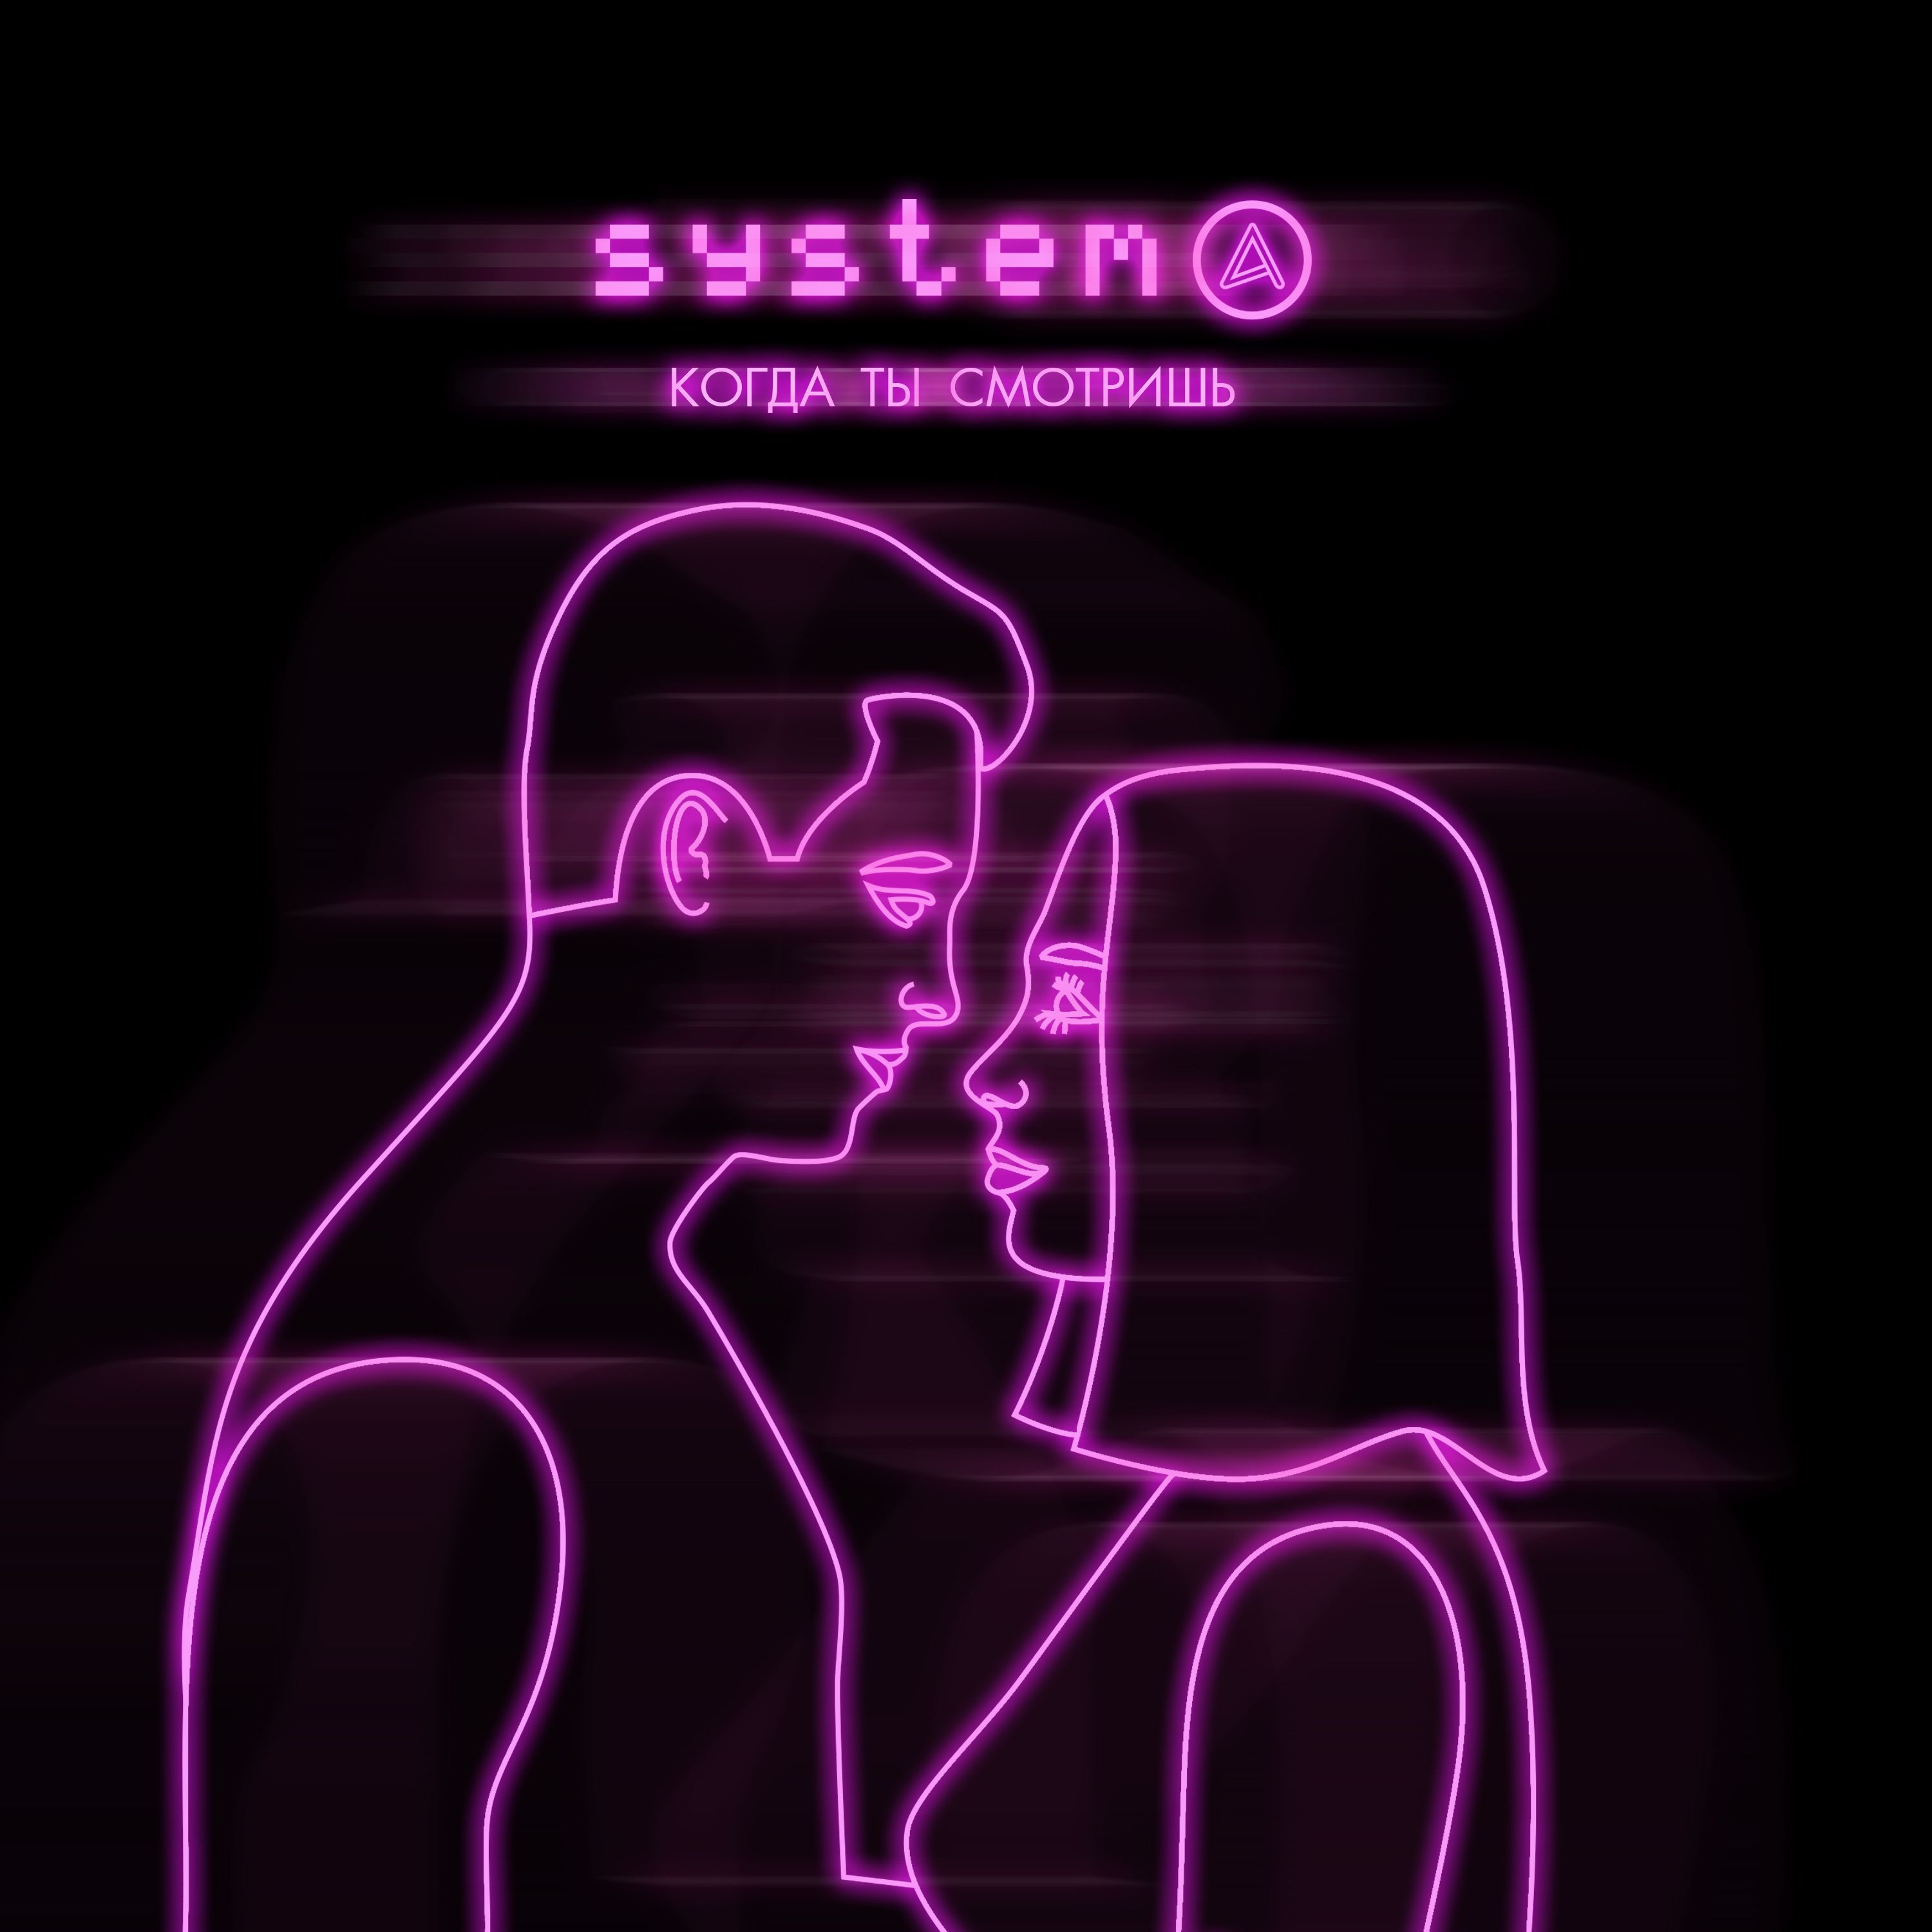 ดาวน์โหลด Systema - Когда ты смотришь